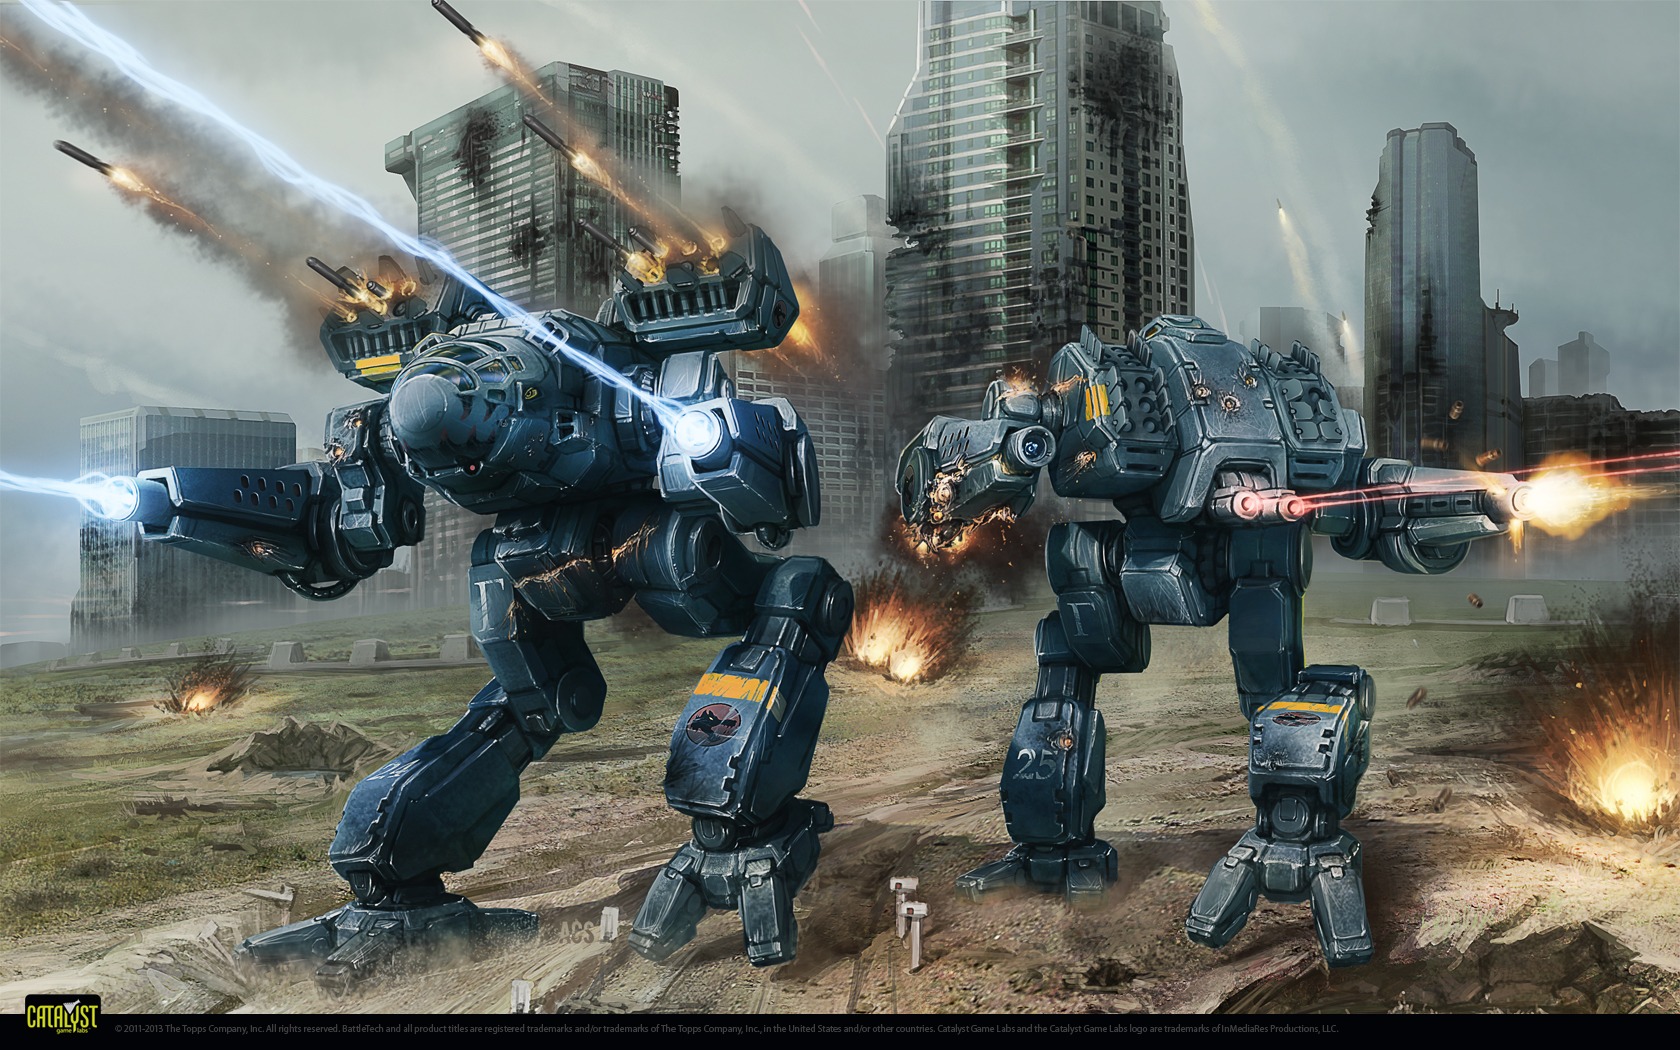 All Robots In War Robots - 1680x1050 Wallpaper 